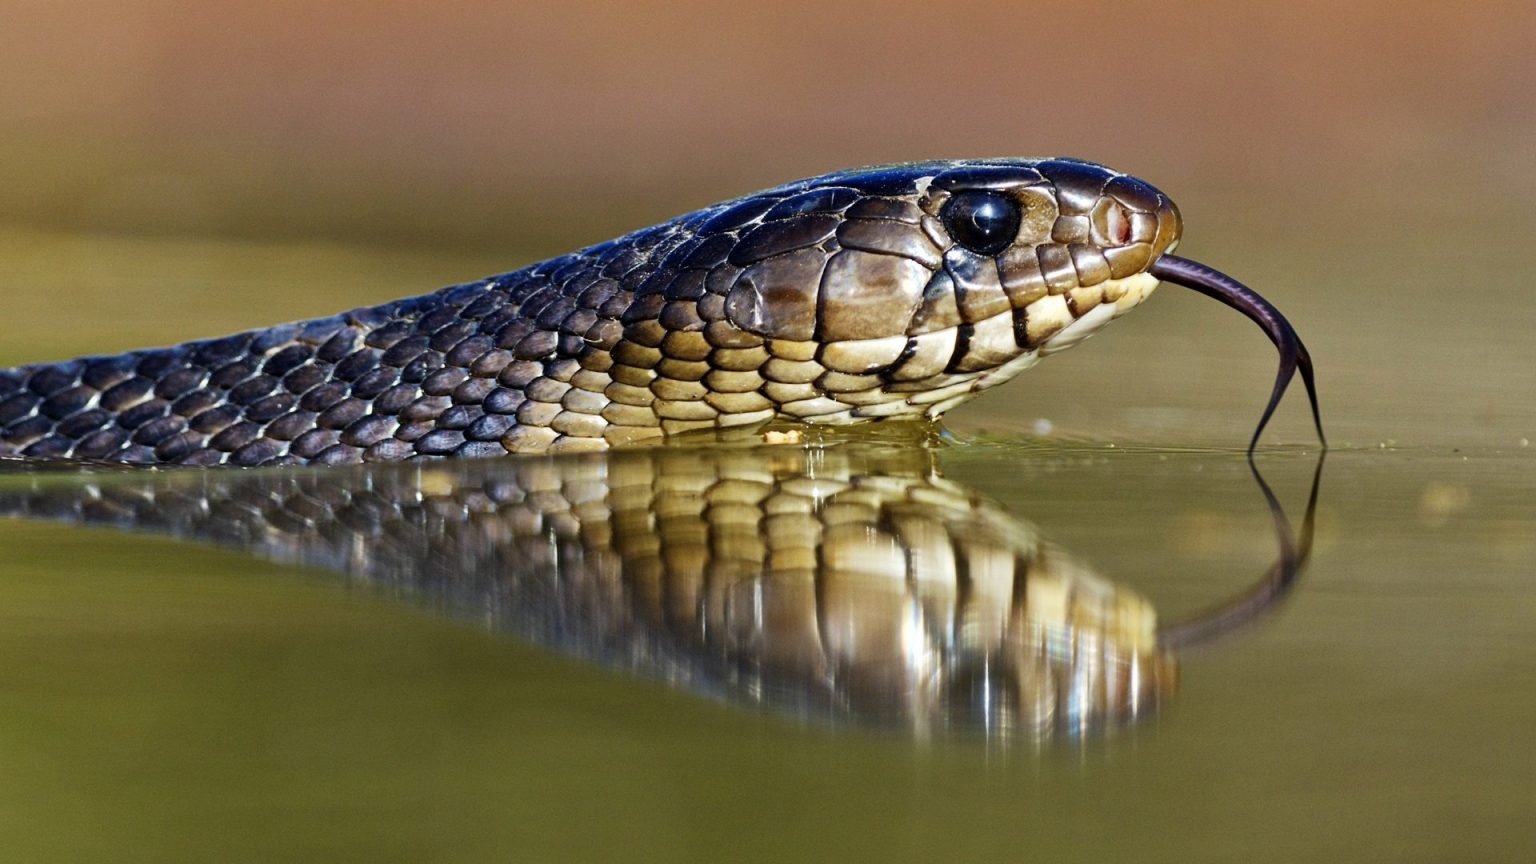 Tổng hợp hình ảnh về loài rắn đẹp nhất - [Kích thước hình ảnh: 1536x864 px]